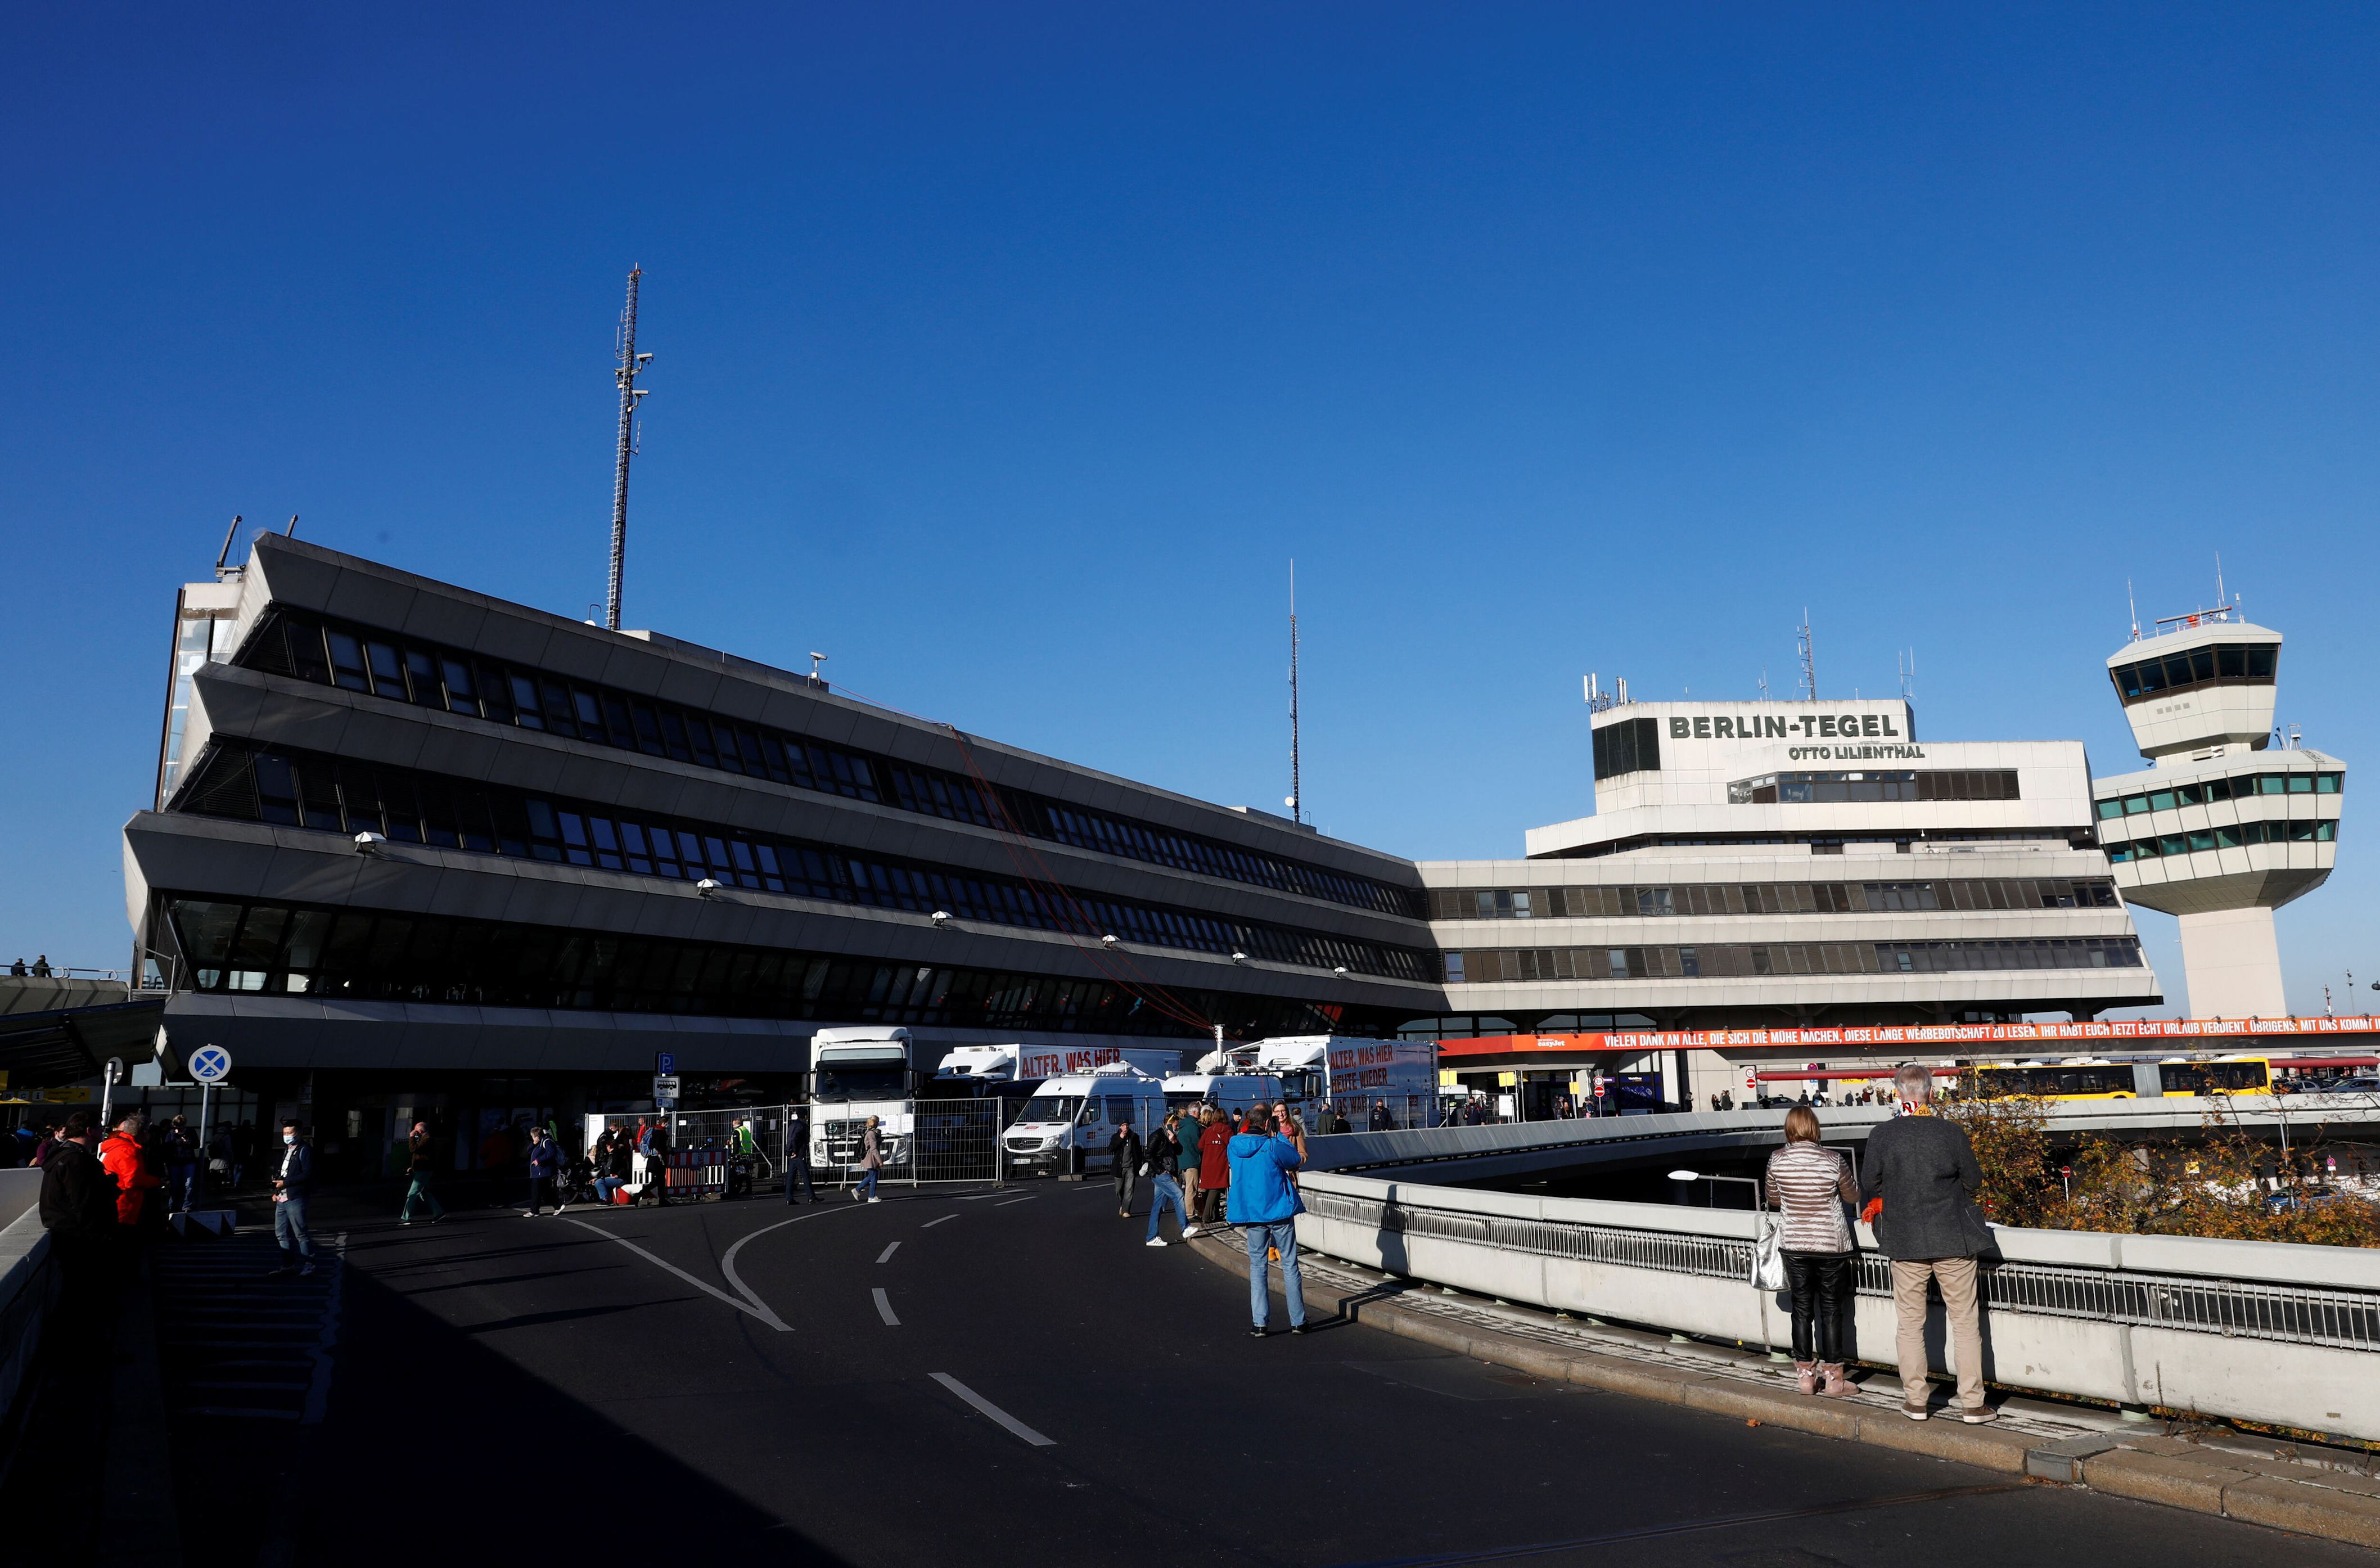 moving to dubai's al maktoum: why do major international airports relocate?